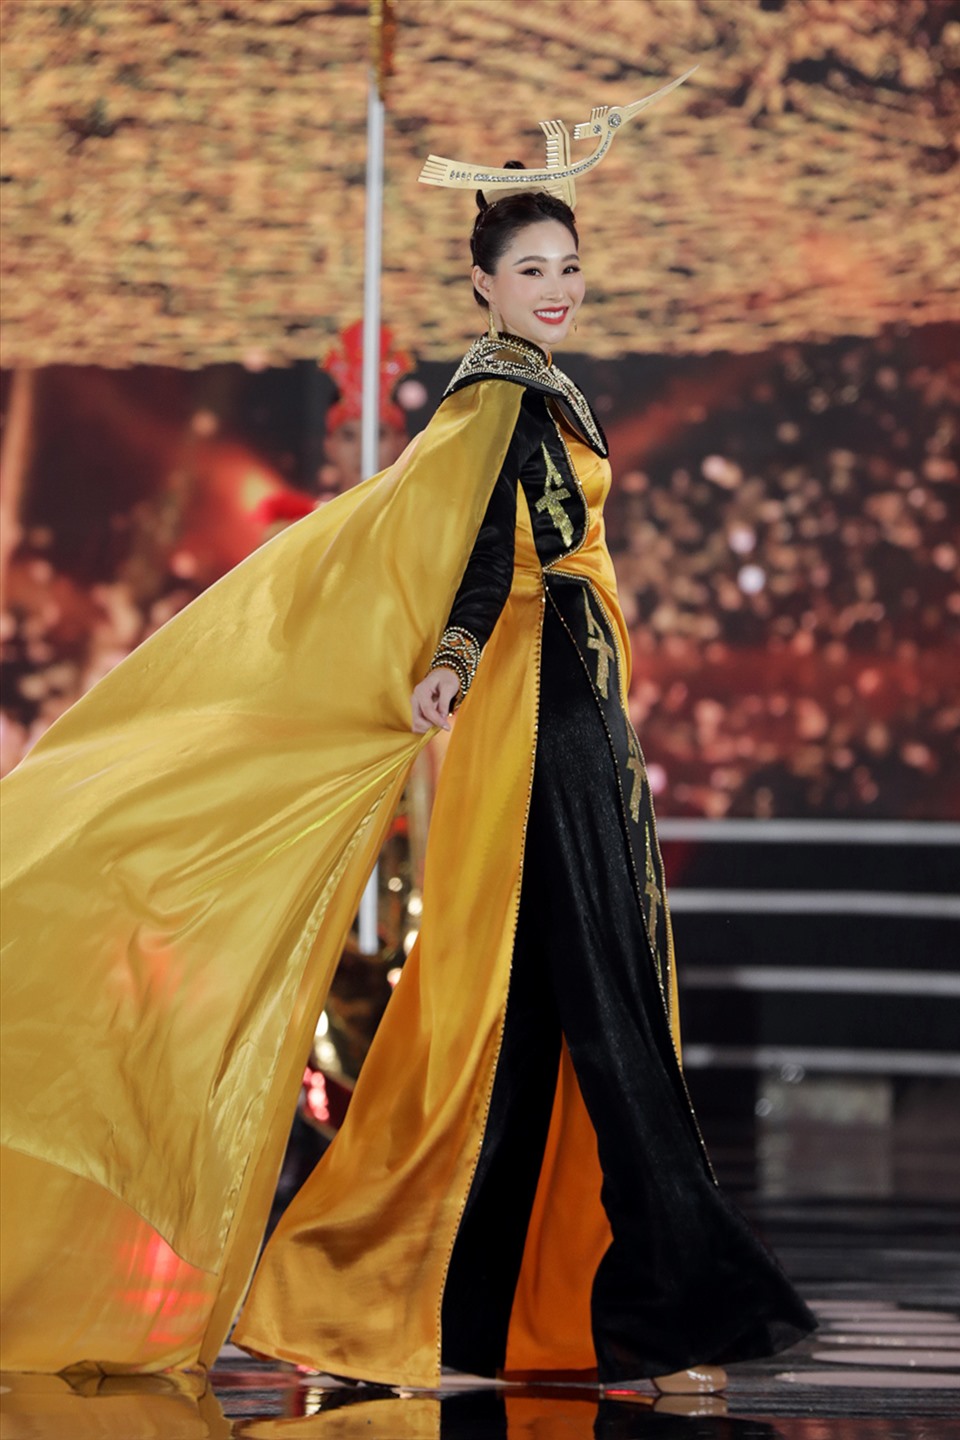 Hoa hậu Đặng Thu Thảo trình diễn áo dài nền nã cùng top 35 thí sinh chung kết Hoa hậu Việt Nam. Sau vài năm trở lại sân khấu, Hoa hậu Đặng Thu Thảo vẫn giữ được thần thái